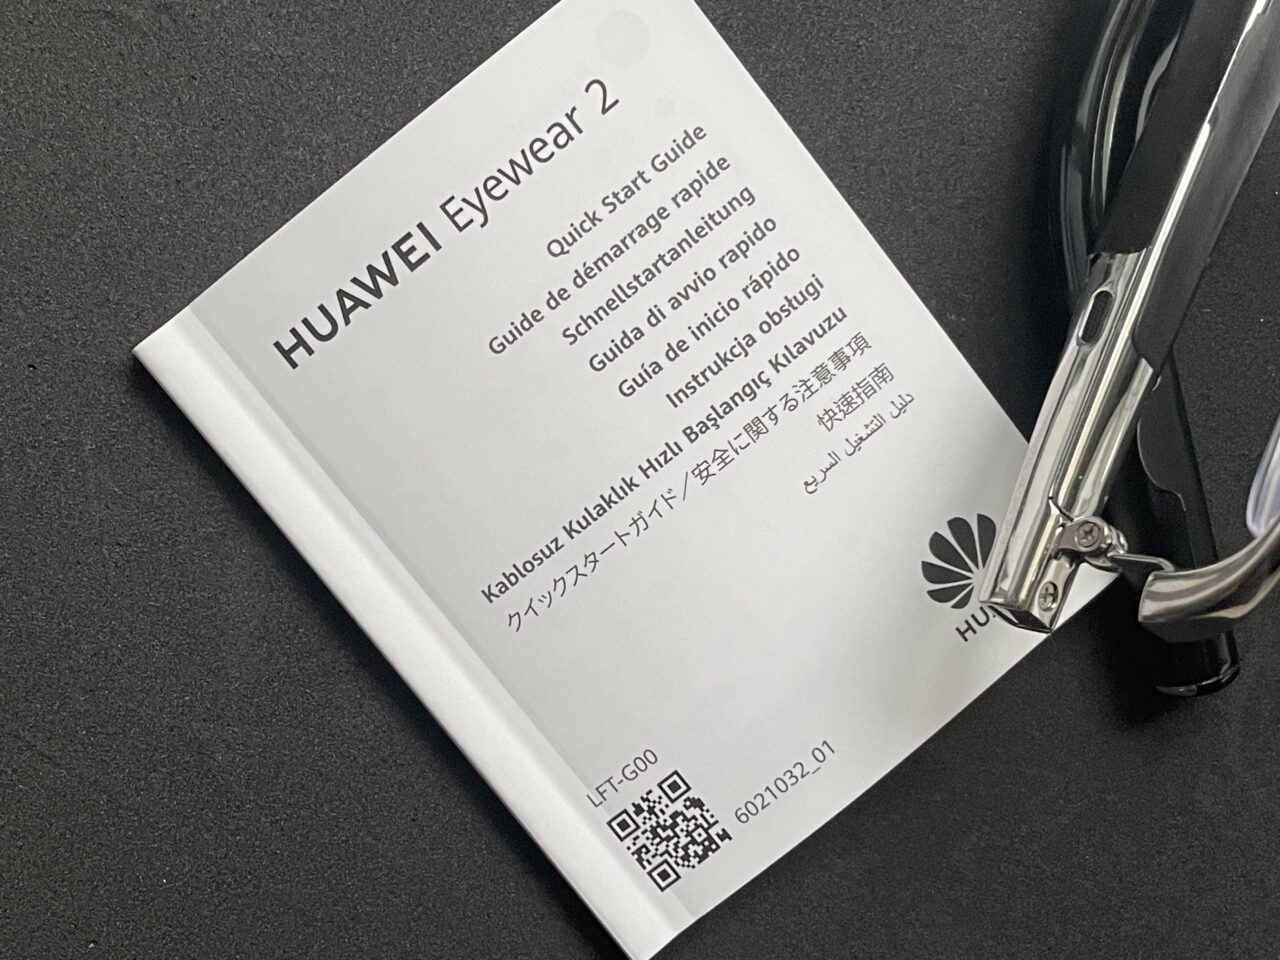 Instrukcja szybkiego startu dla produktu HUAWEI Eyewear 2 z kodem QR i przewodnikiem w różnych językach obok czarnej okularów.